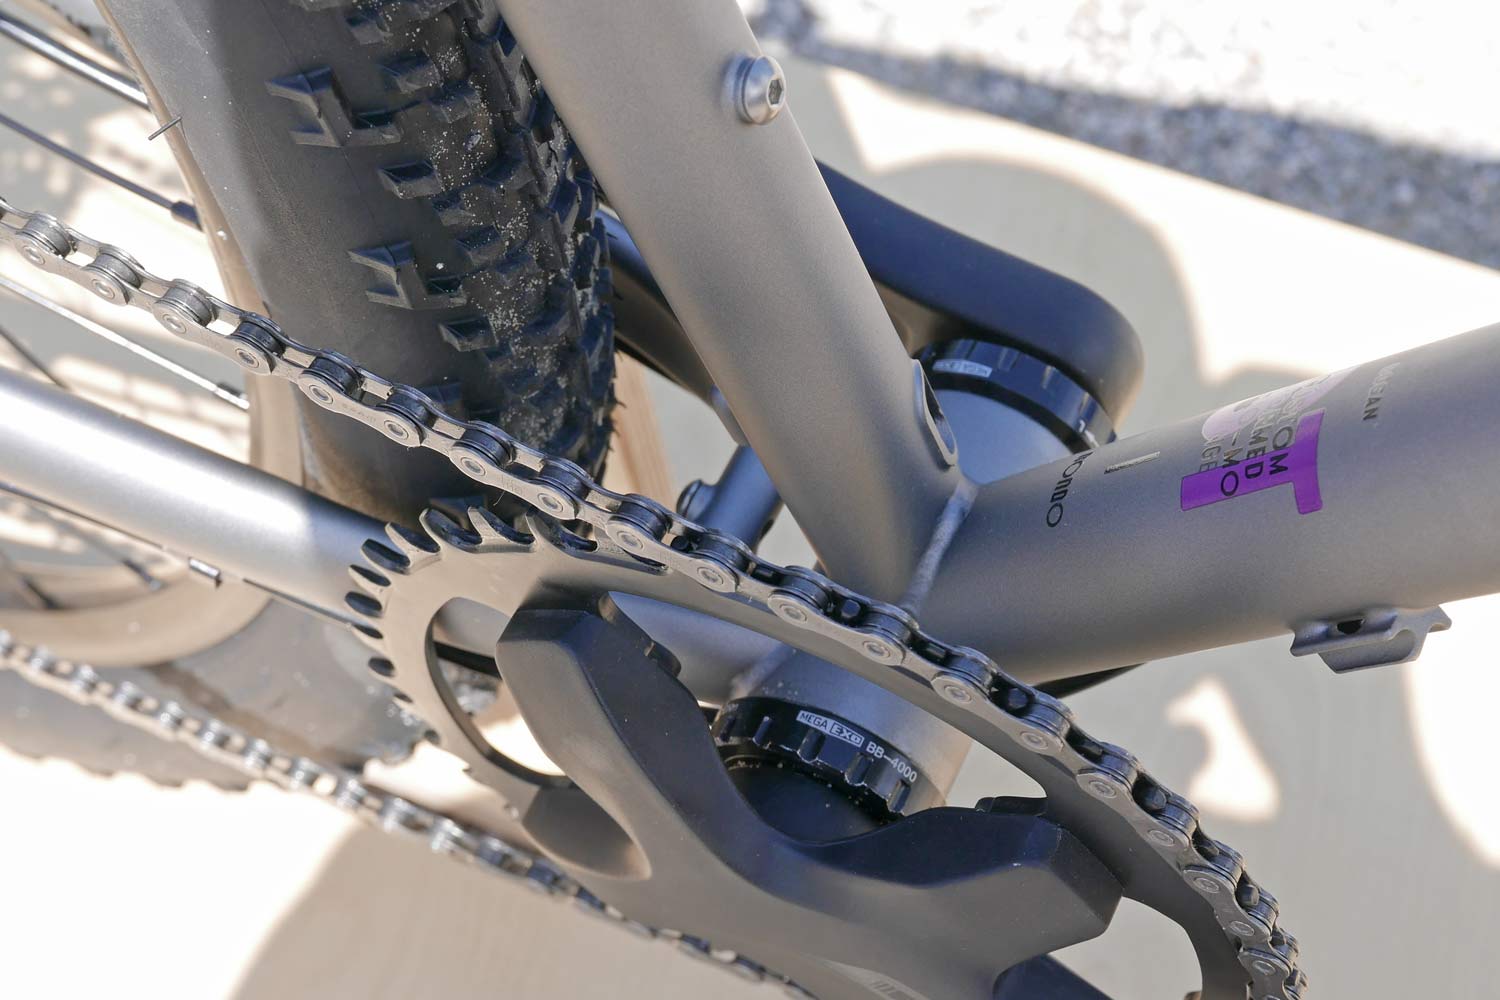 2020 Rondo Bogan steel 29er adventure gravel bike, all new Tange steel variable geometry gravel bikepacking bike